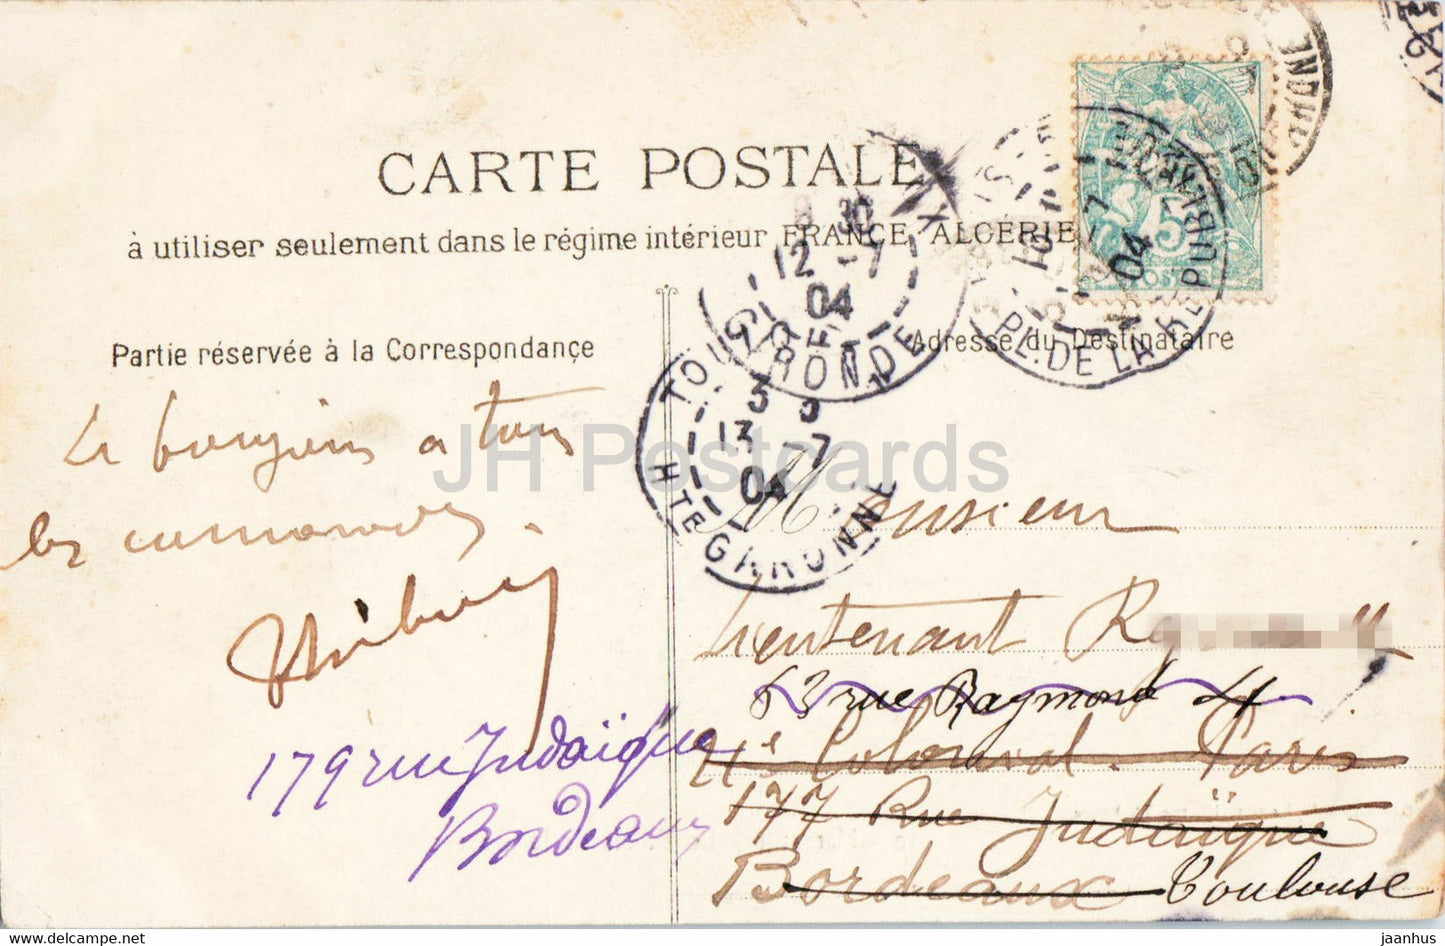 Marseille - Le Palais de La Bourse - 10 - tram - old postcard - 1904 - France - used